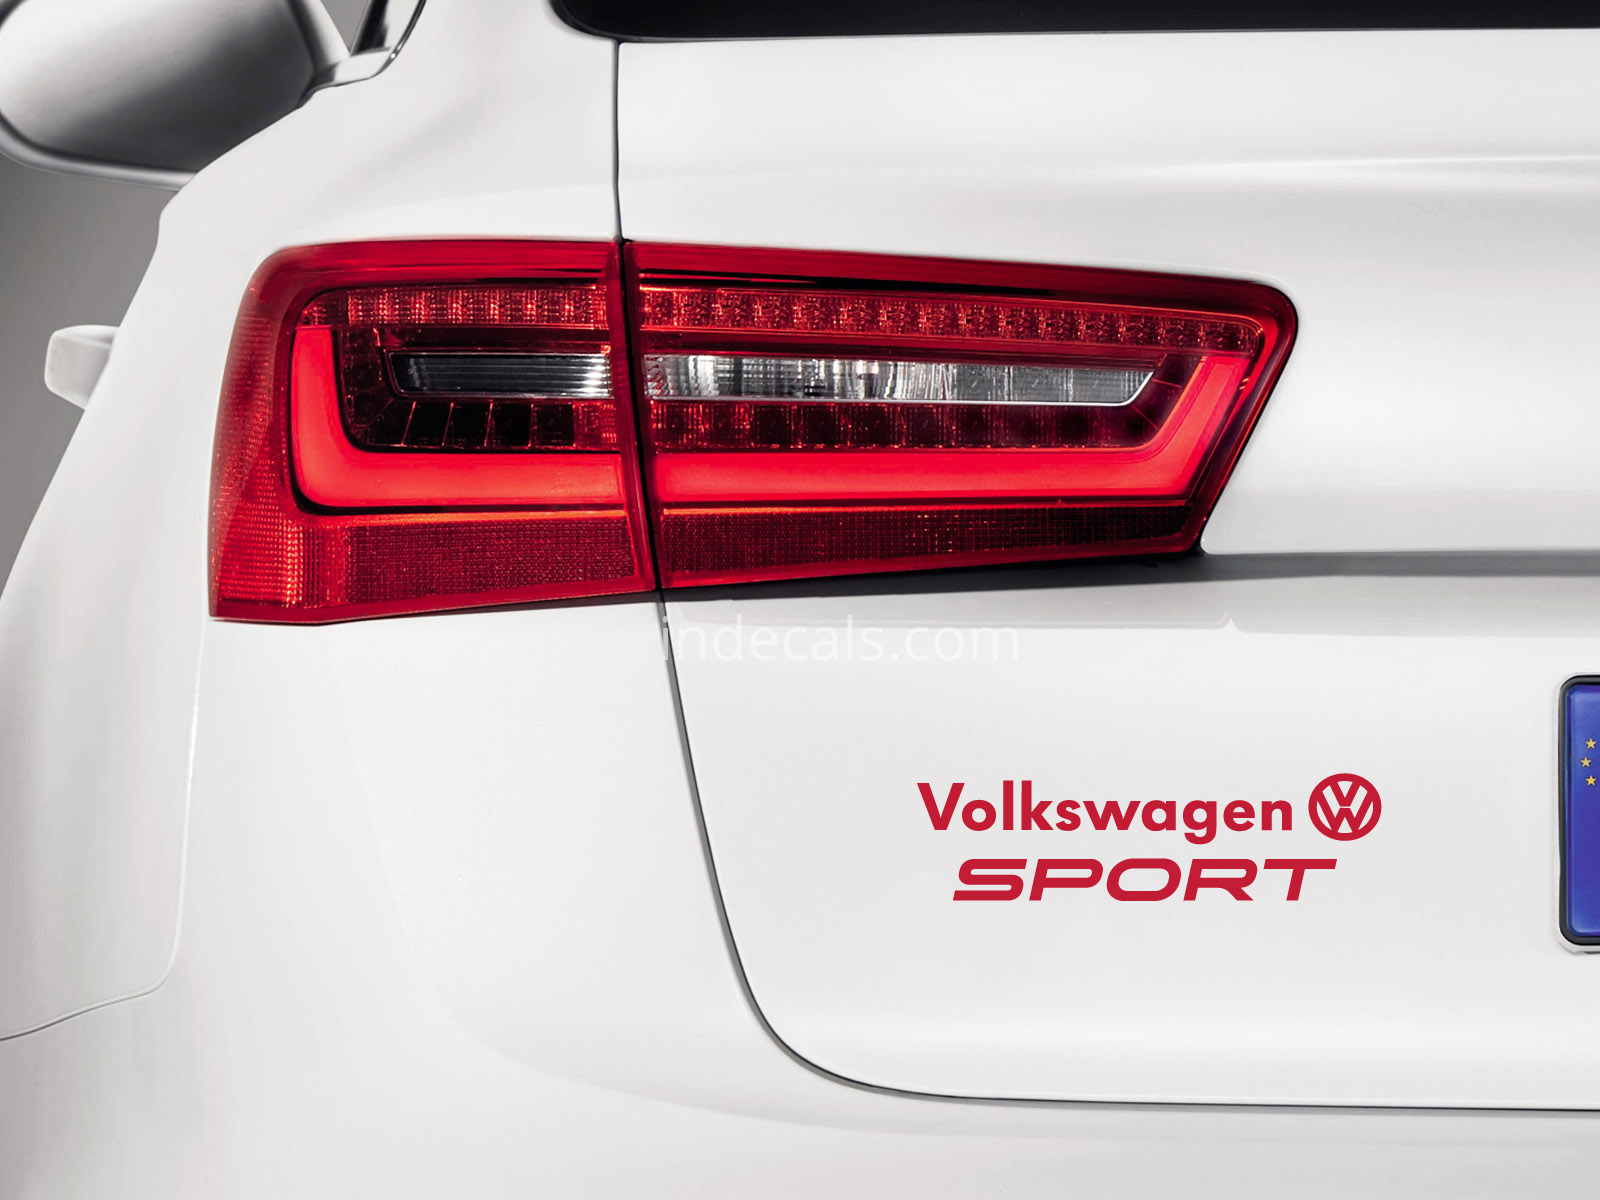 1 x Volkswagen Sports Sticker for Trunk - Red